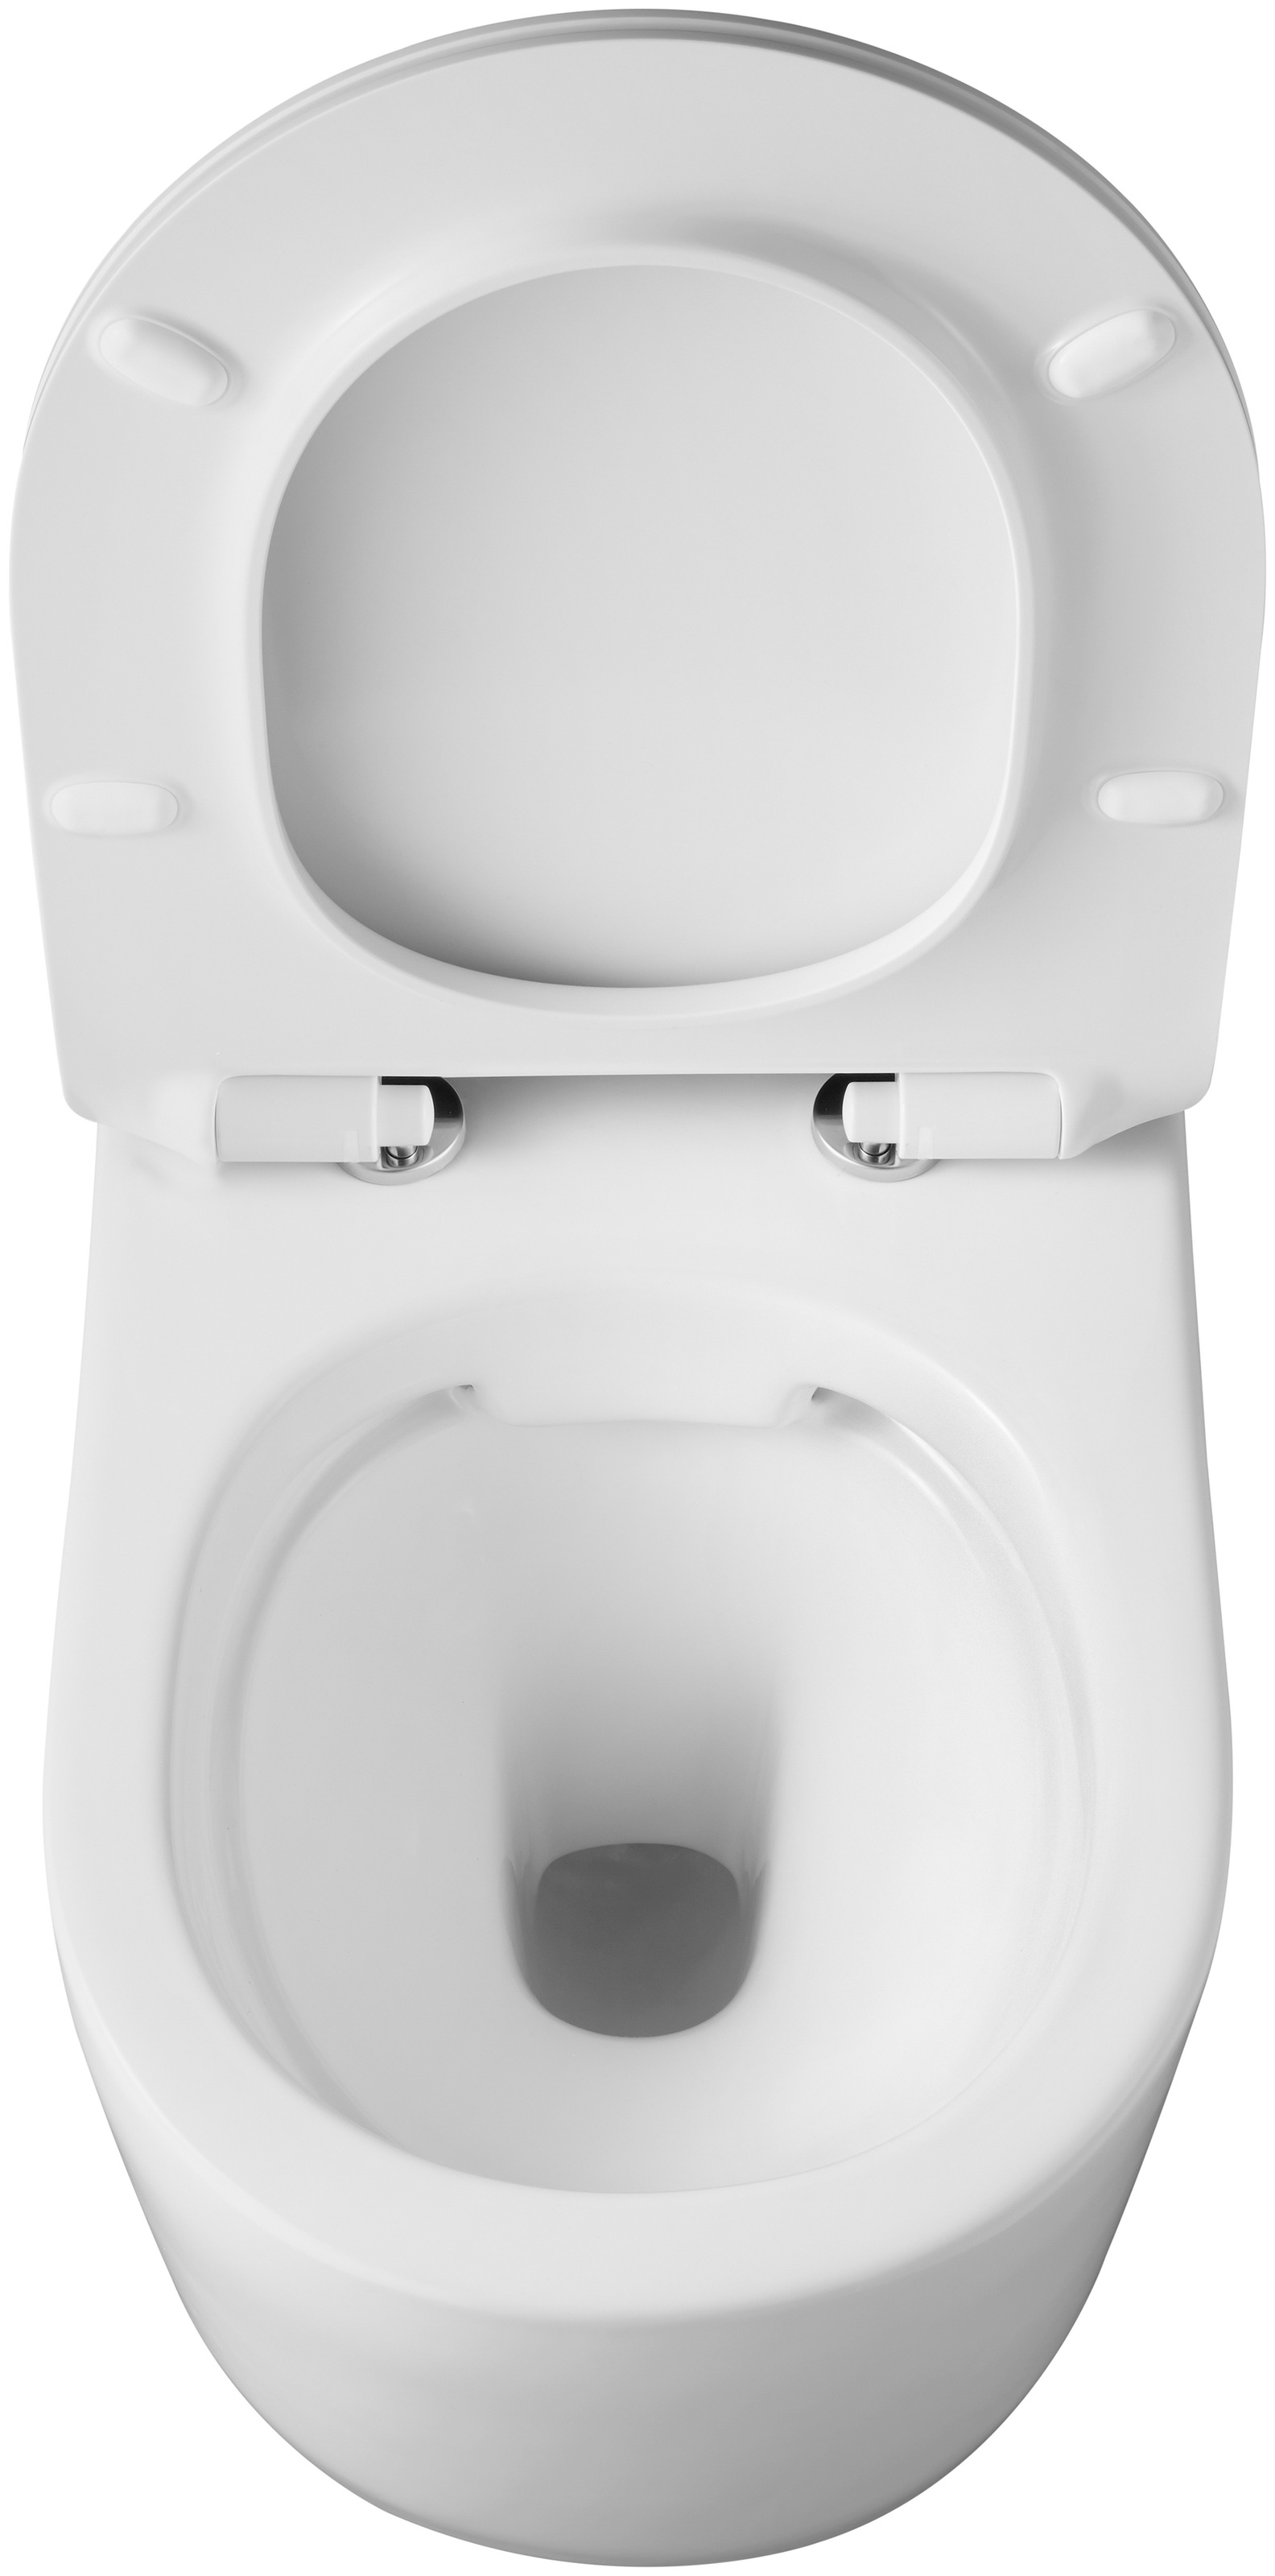 welltime Tiefspül-WC »Trento«, spülrandlos, aus Sanitärkeramik, inkl. WC-Sitz mit Absenkautomatik